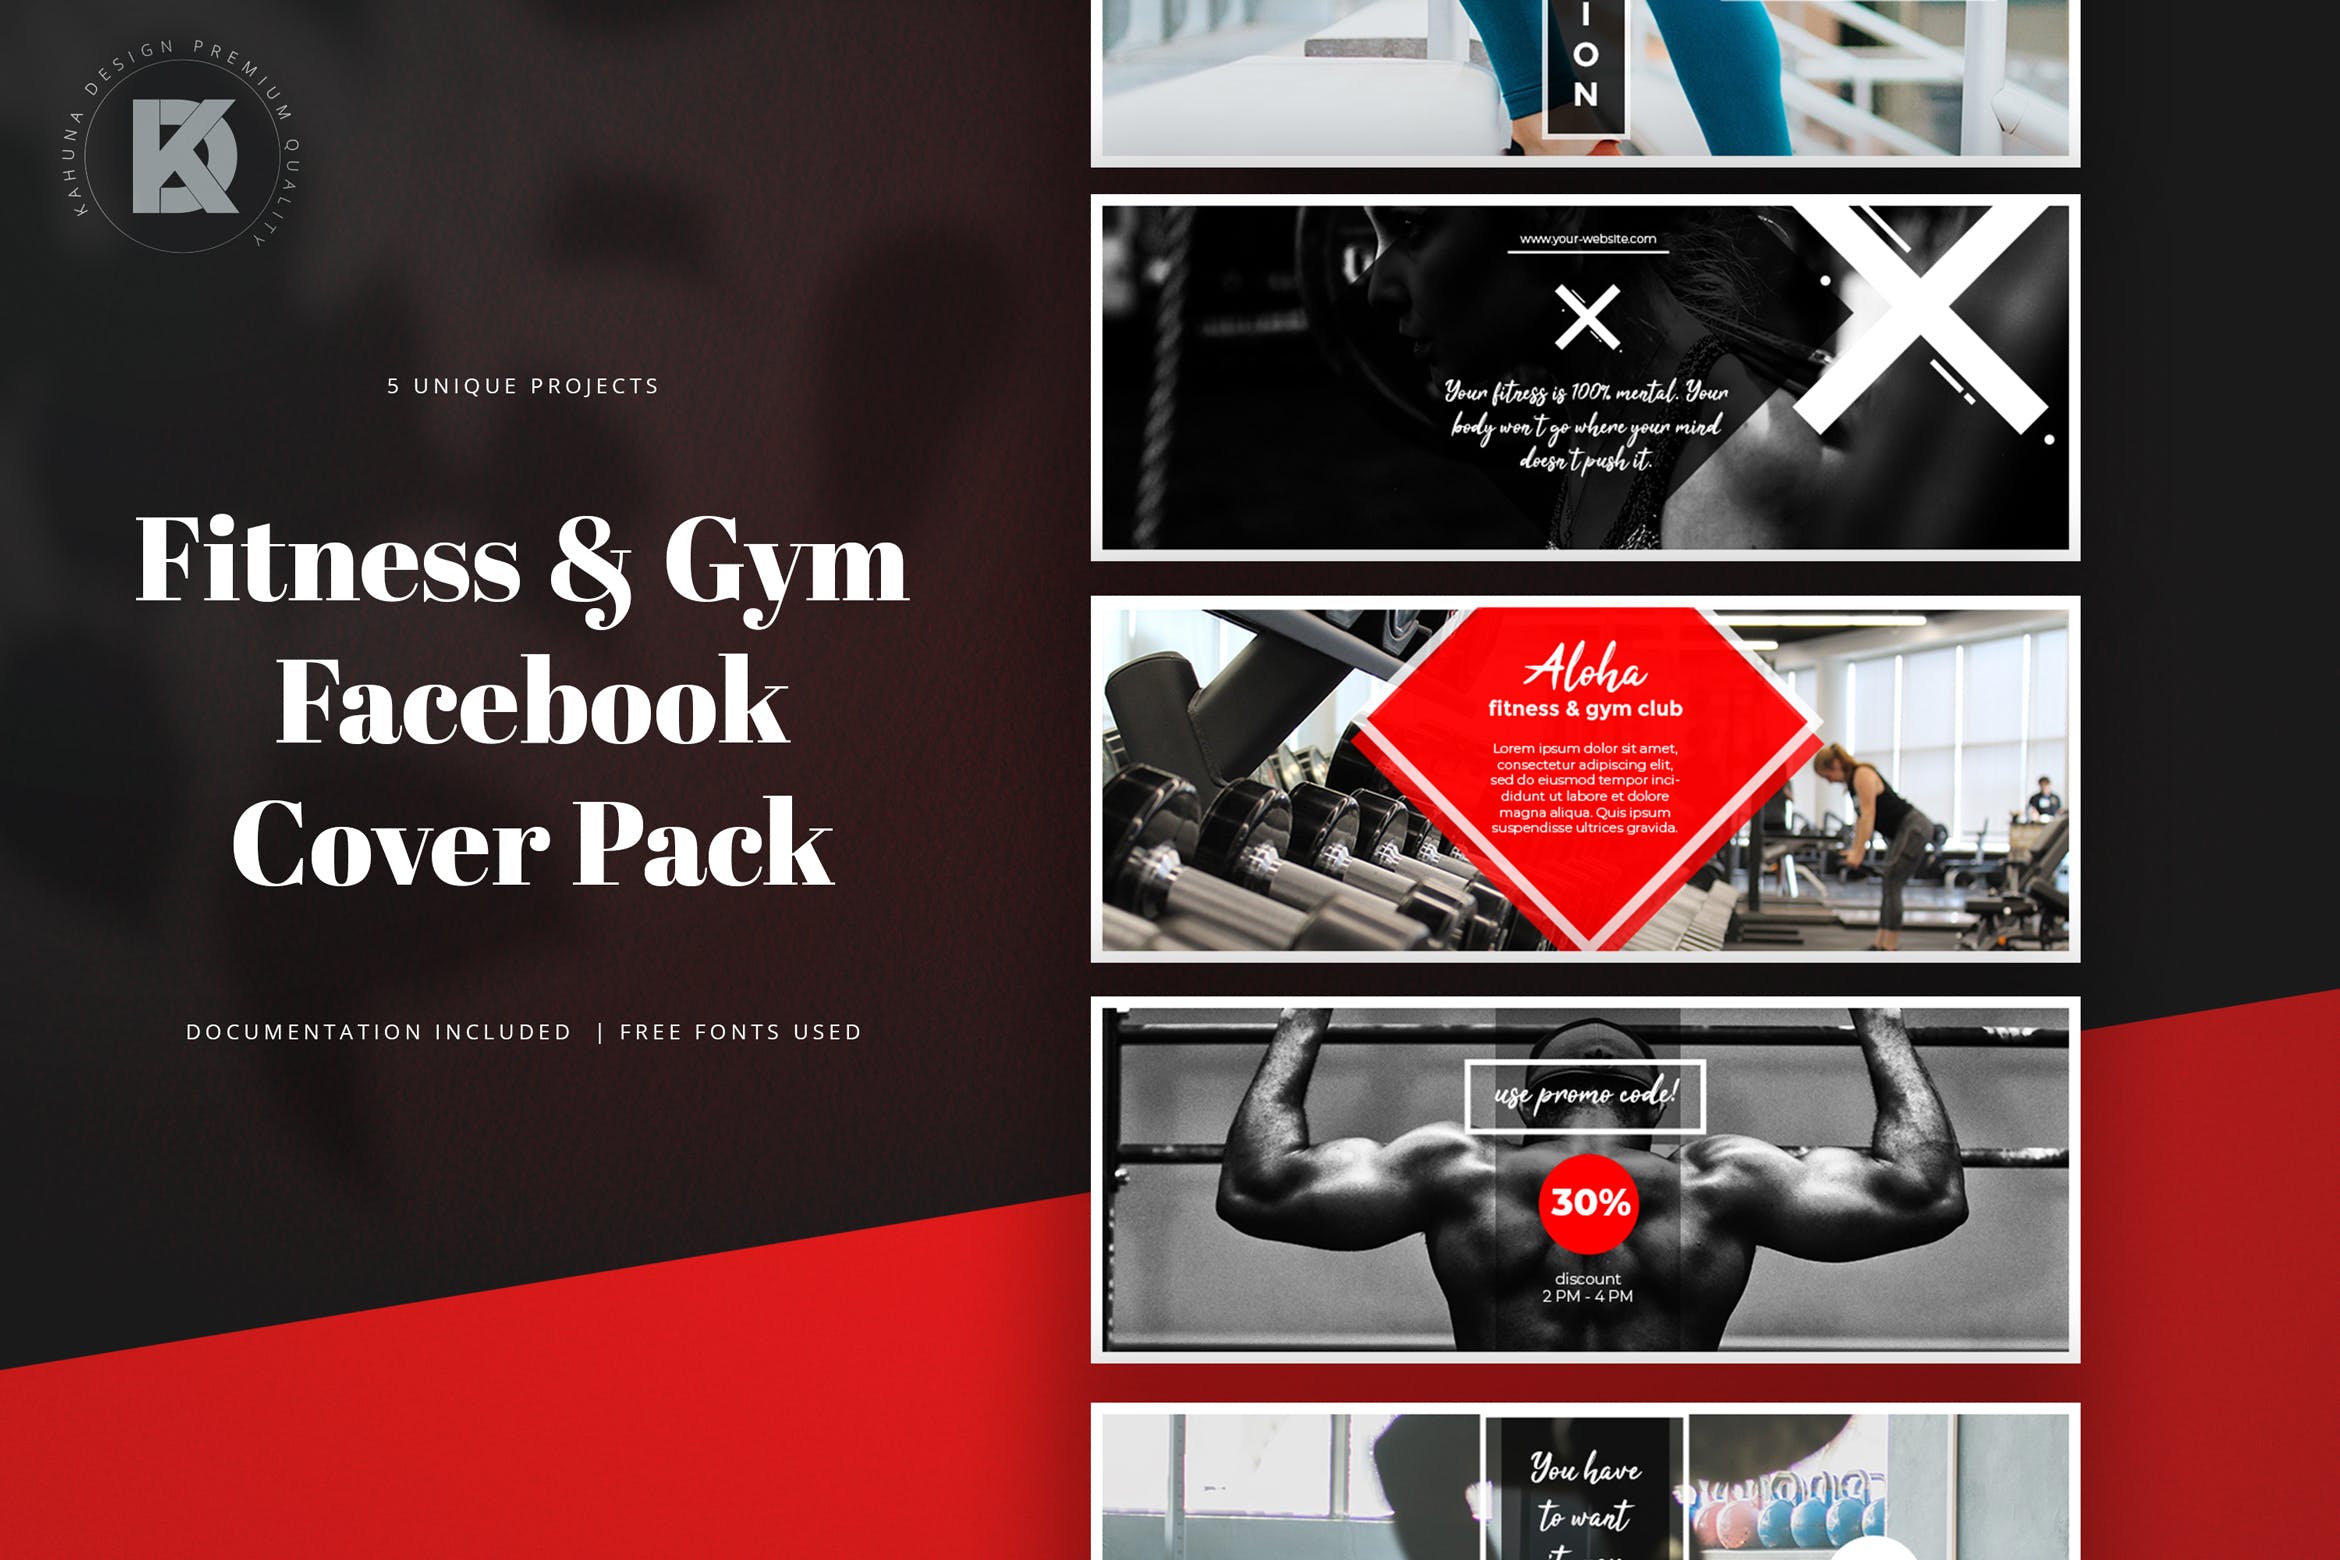 健身运动品牌Facebook封面设计模板素材库精选 Fitness & Gym Facebook Cover Pack插图